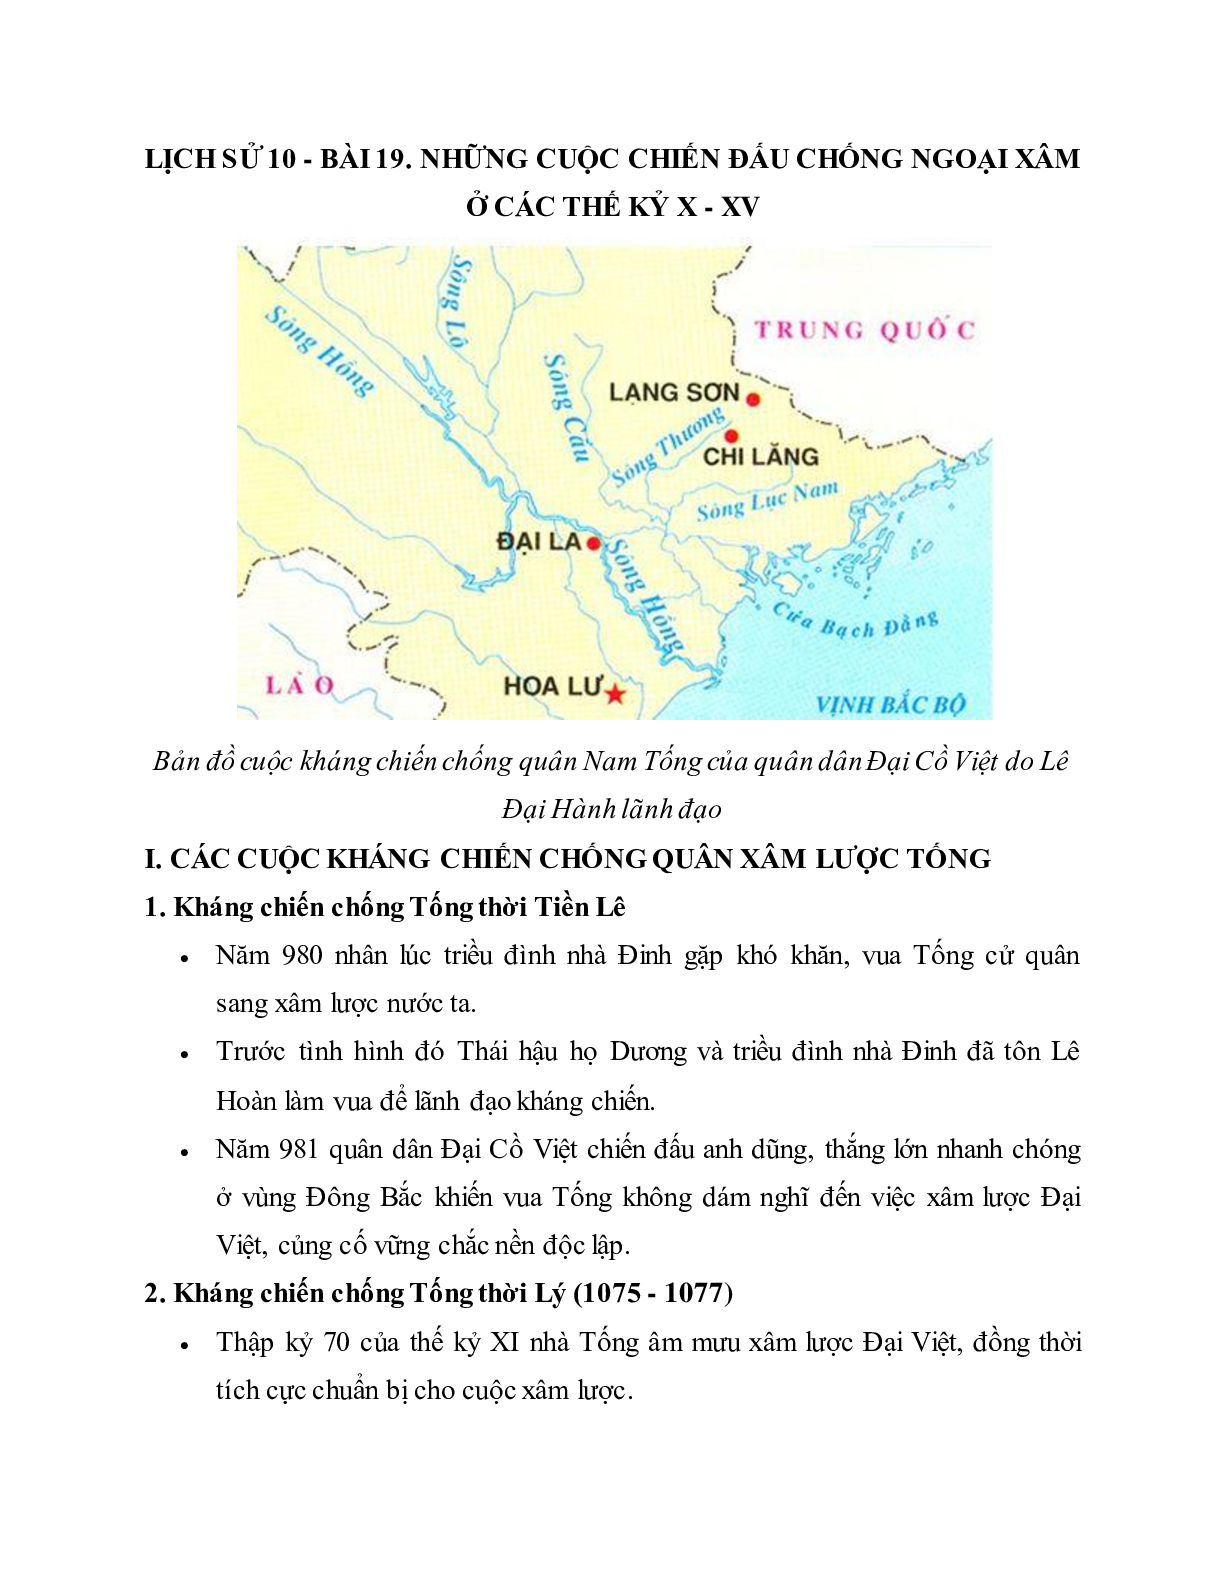 Lý thuyết Lịch sử 10: Bài 19: Những cuộc kháng chiến chống ngoại xâm ở các thế kỉ X - XV mới nhất (trang 1)